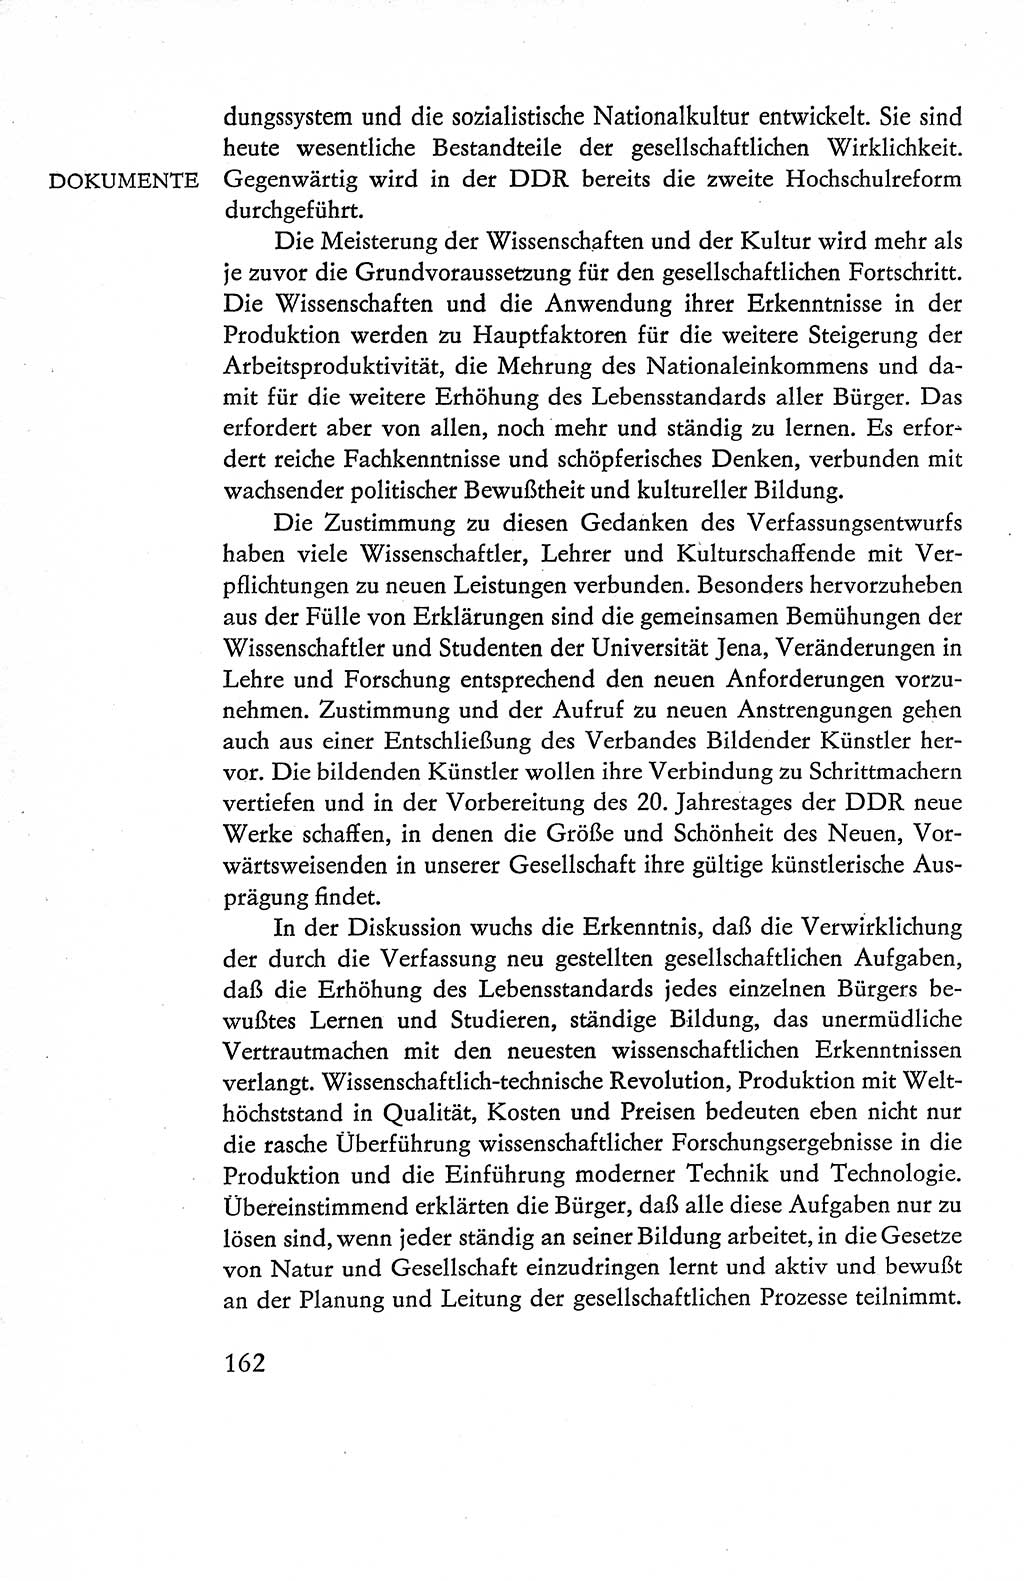 Verfassung der Deutschen Demokratischen Republik (DDR), Dokumente, Kommentar 1969, Band 1, Seite 162 (Verf. DDR Dok. Komm. 1969, Bd. 1, S. 162)